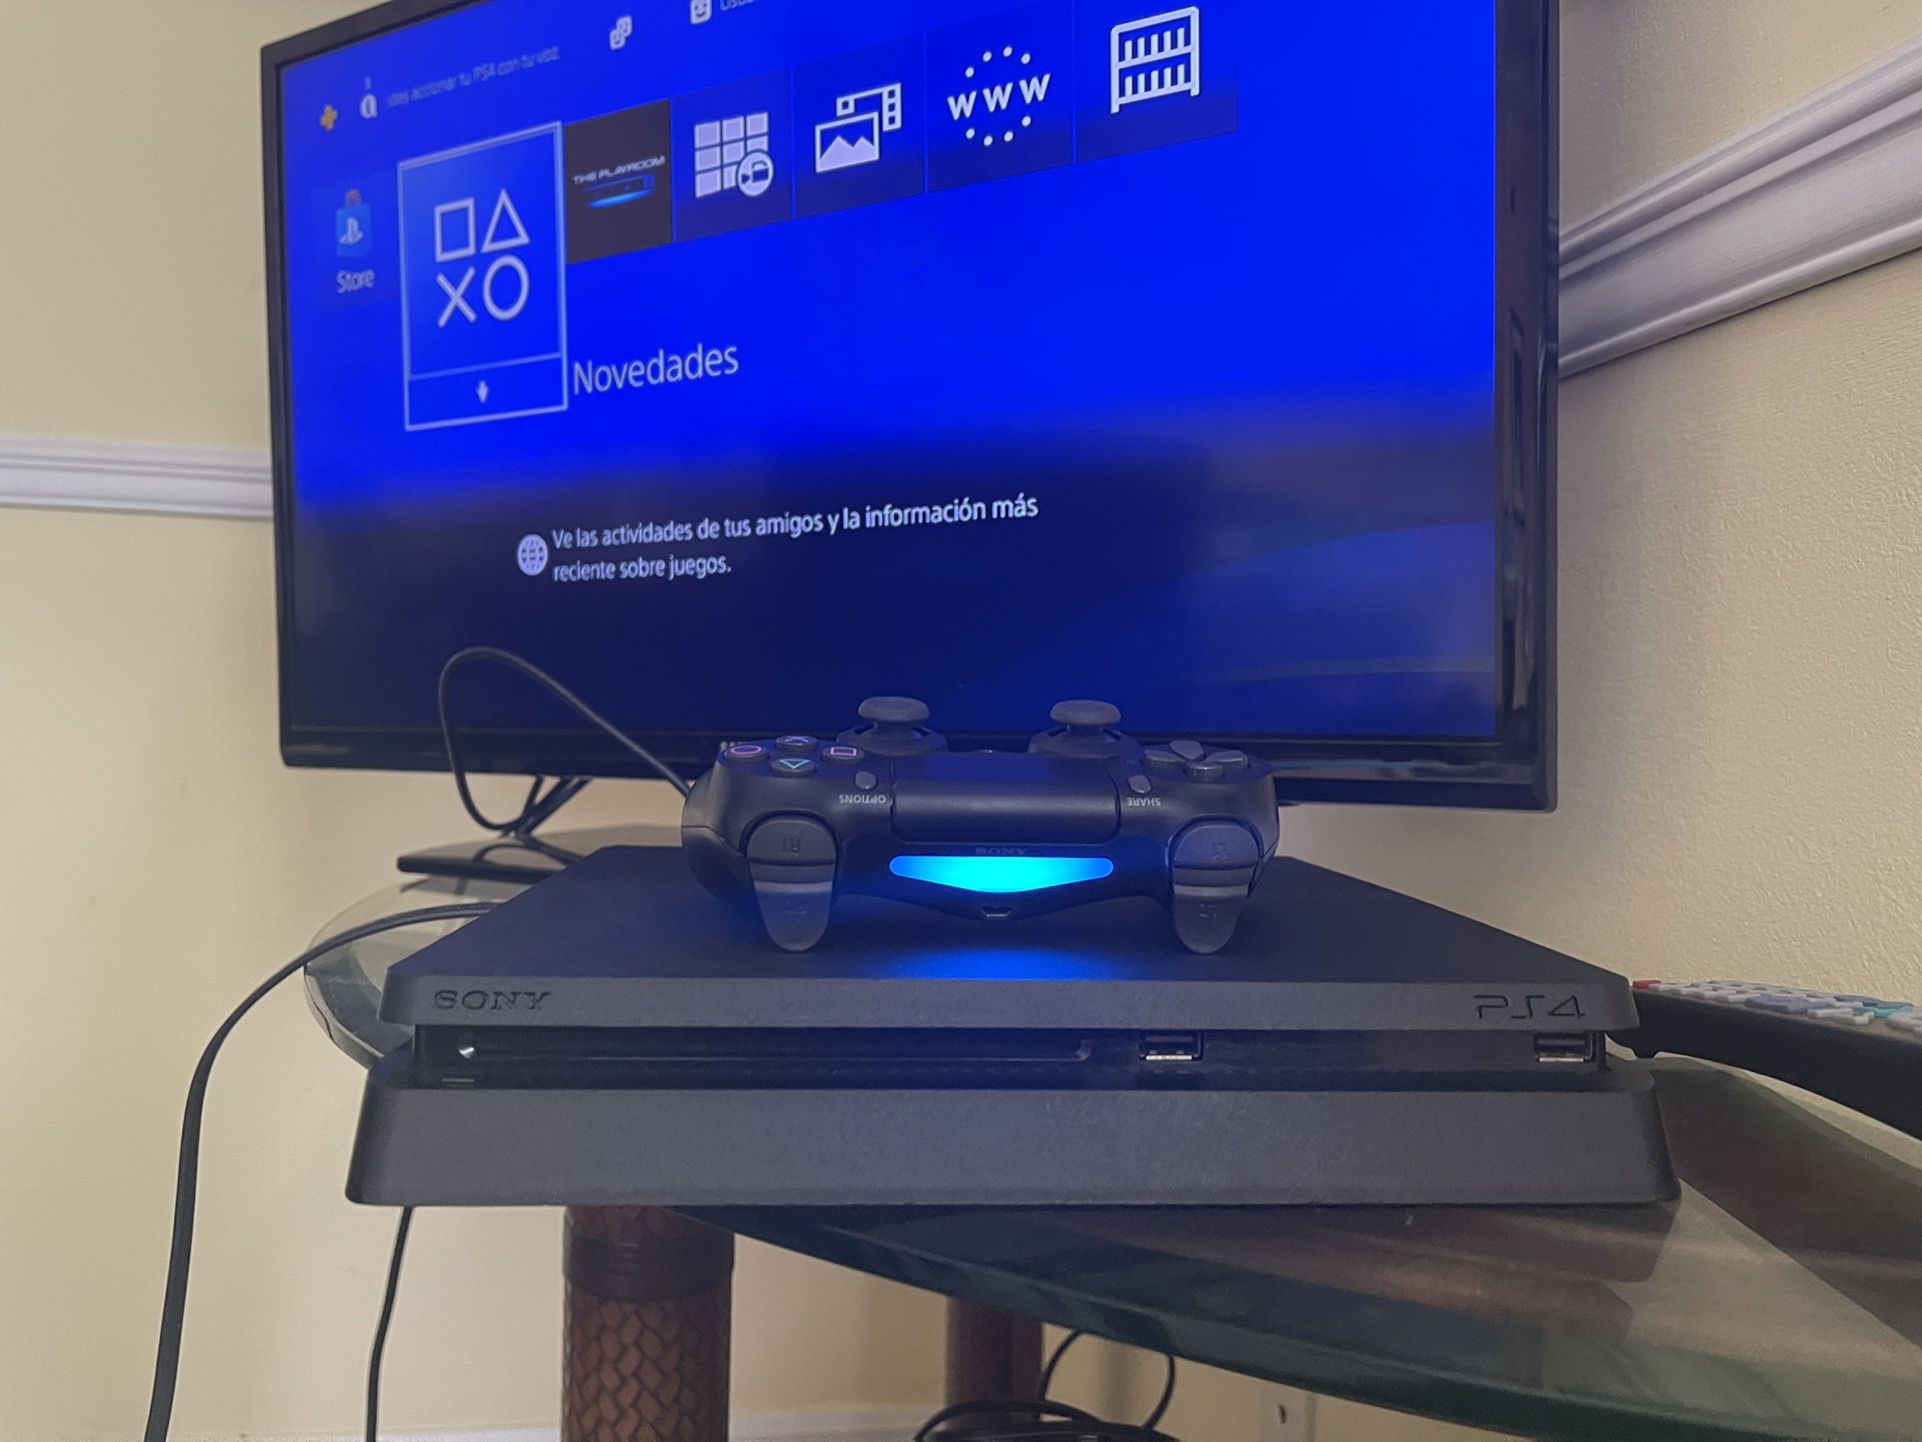 PlayStation 4 1Tb FIRM PRICE 🔥🎮 Ps4 Como Nuevo Con Un Mando Y Todos Los Cables El Precio Es FIRME 👈 Real Seller Play 4